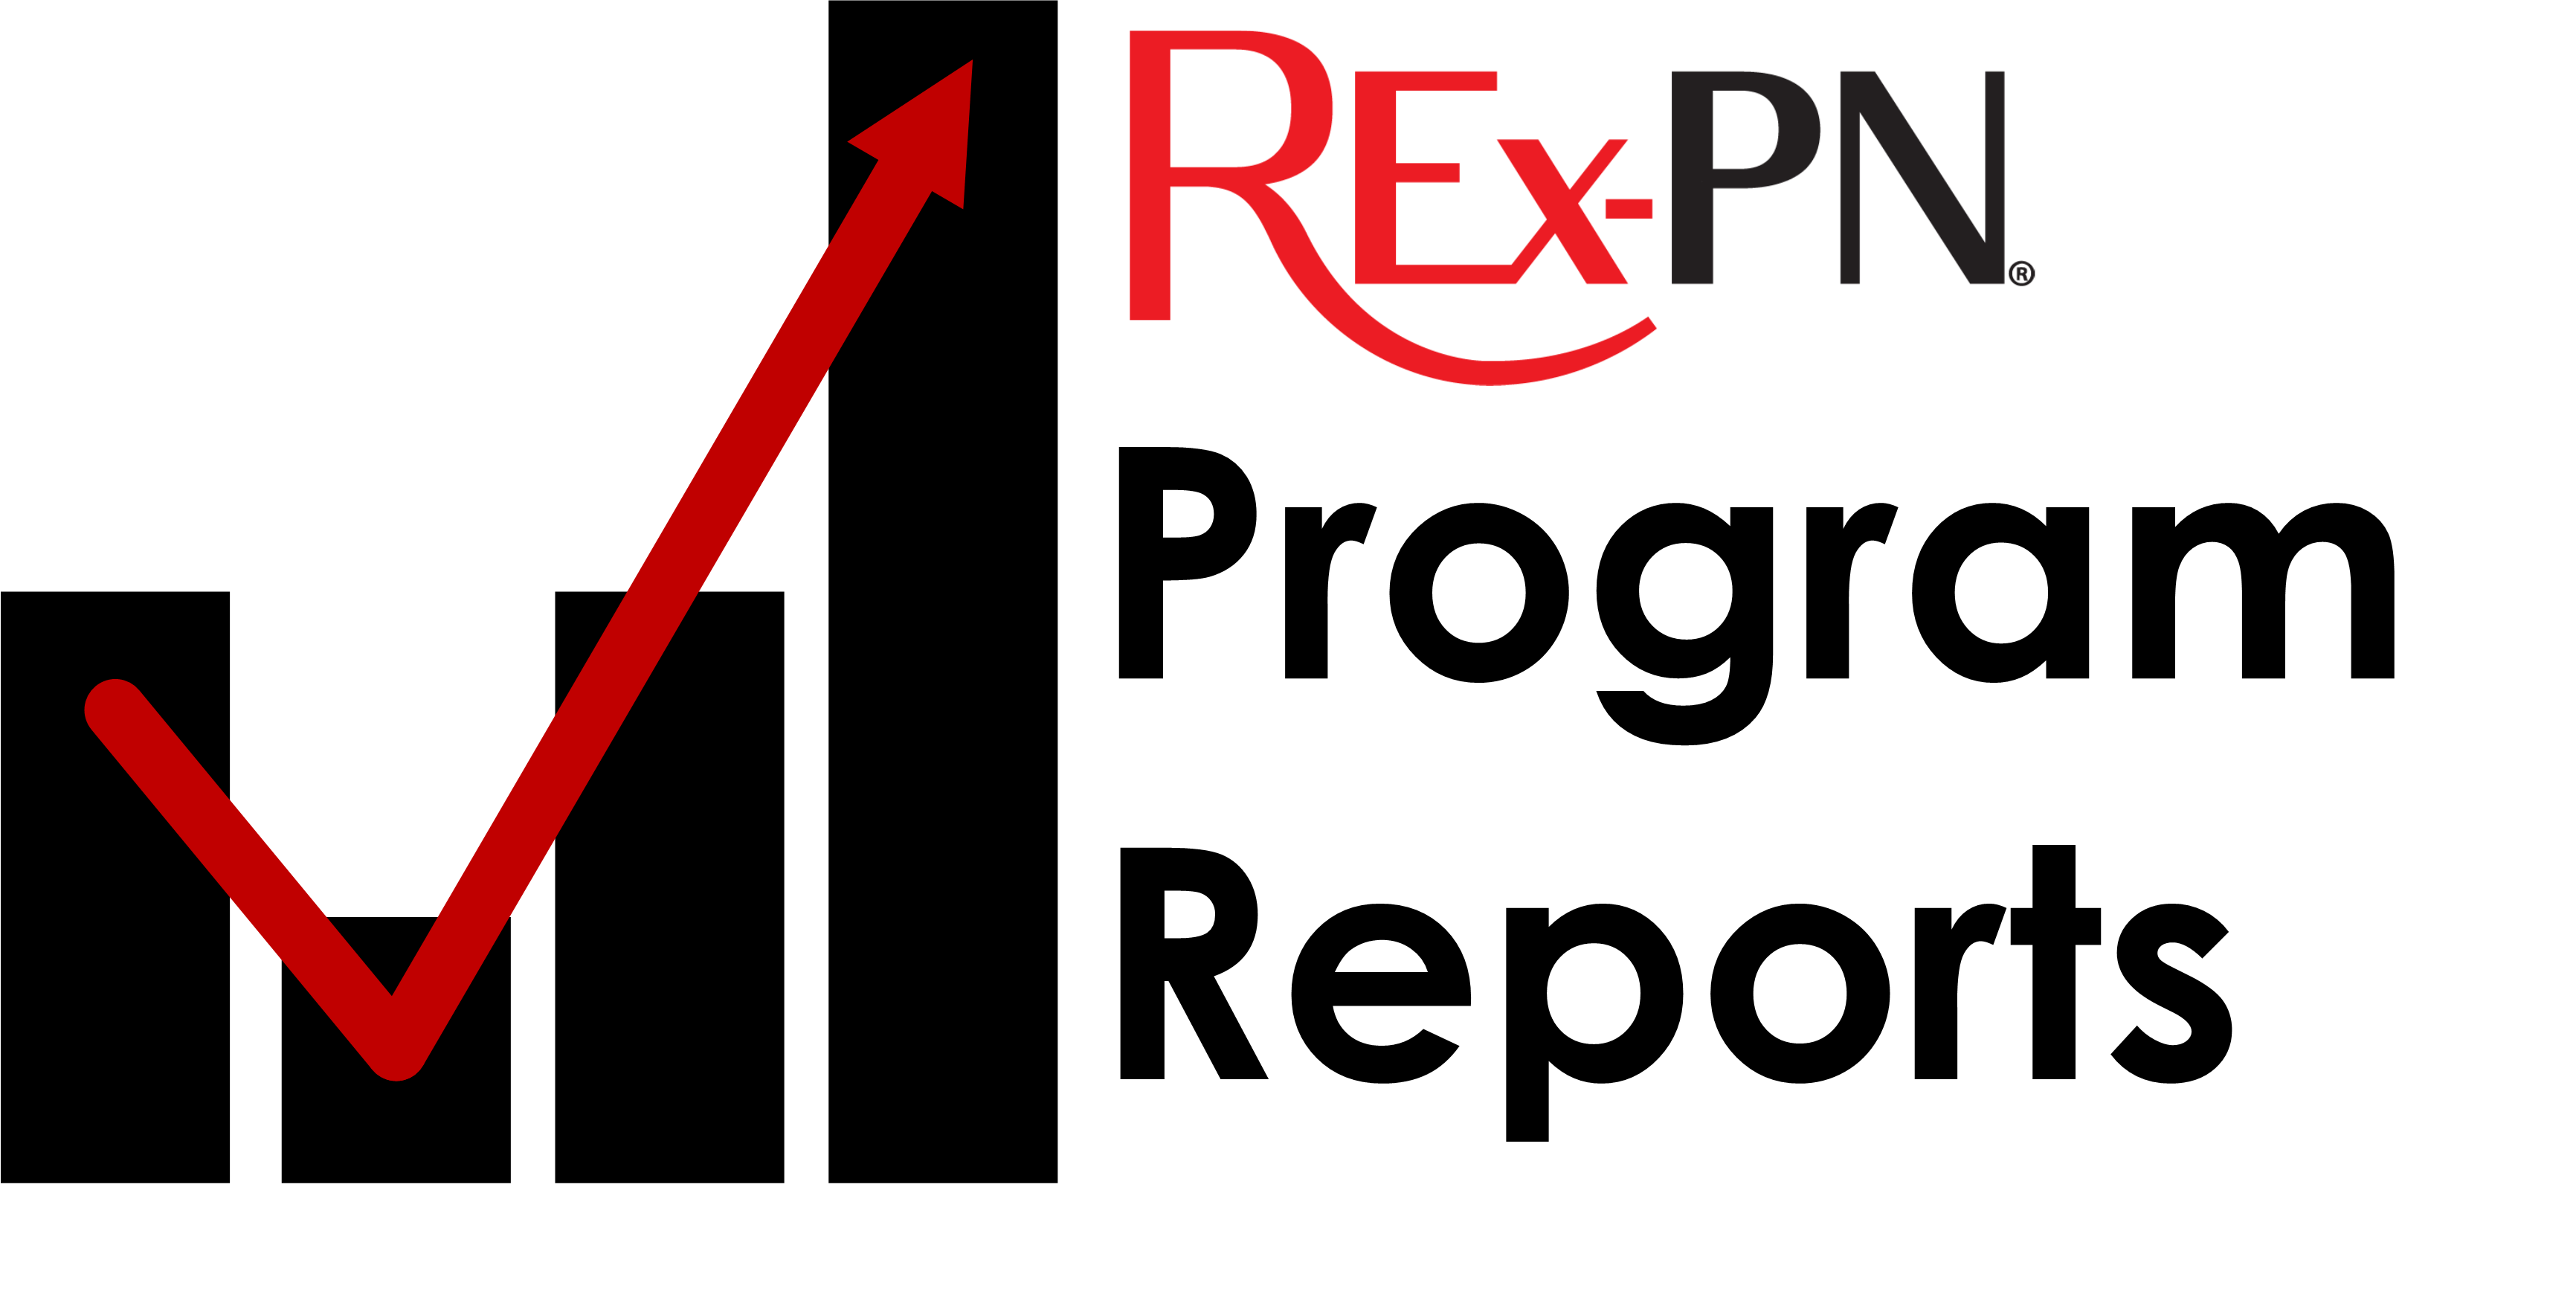 REx-PN Program Reports